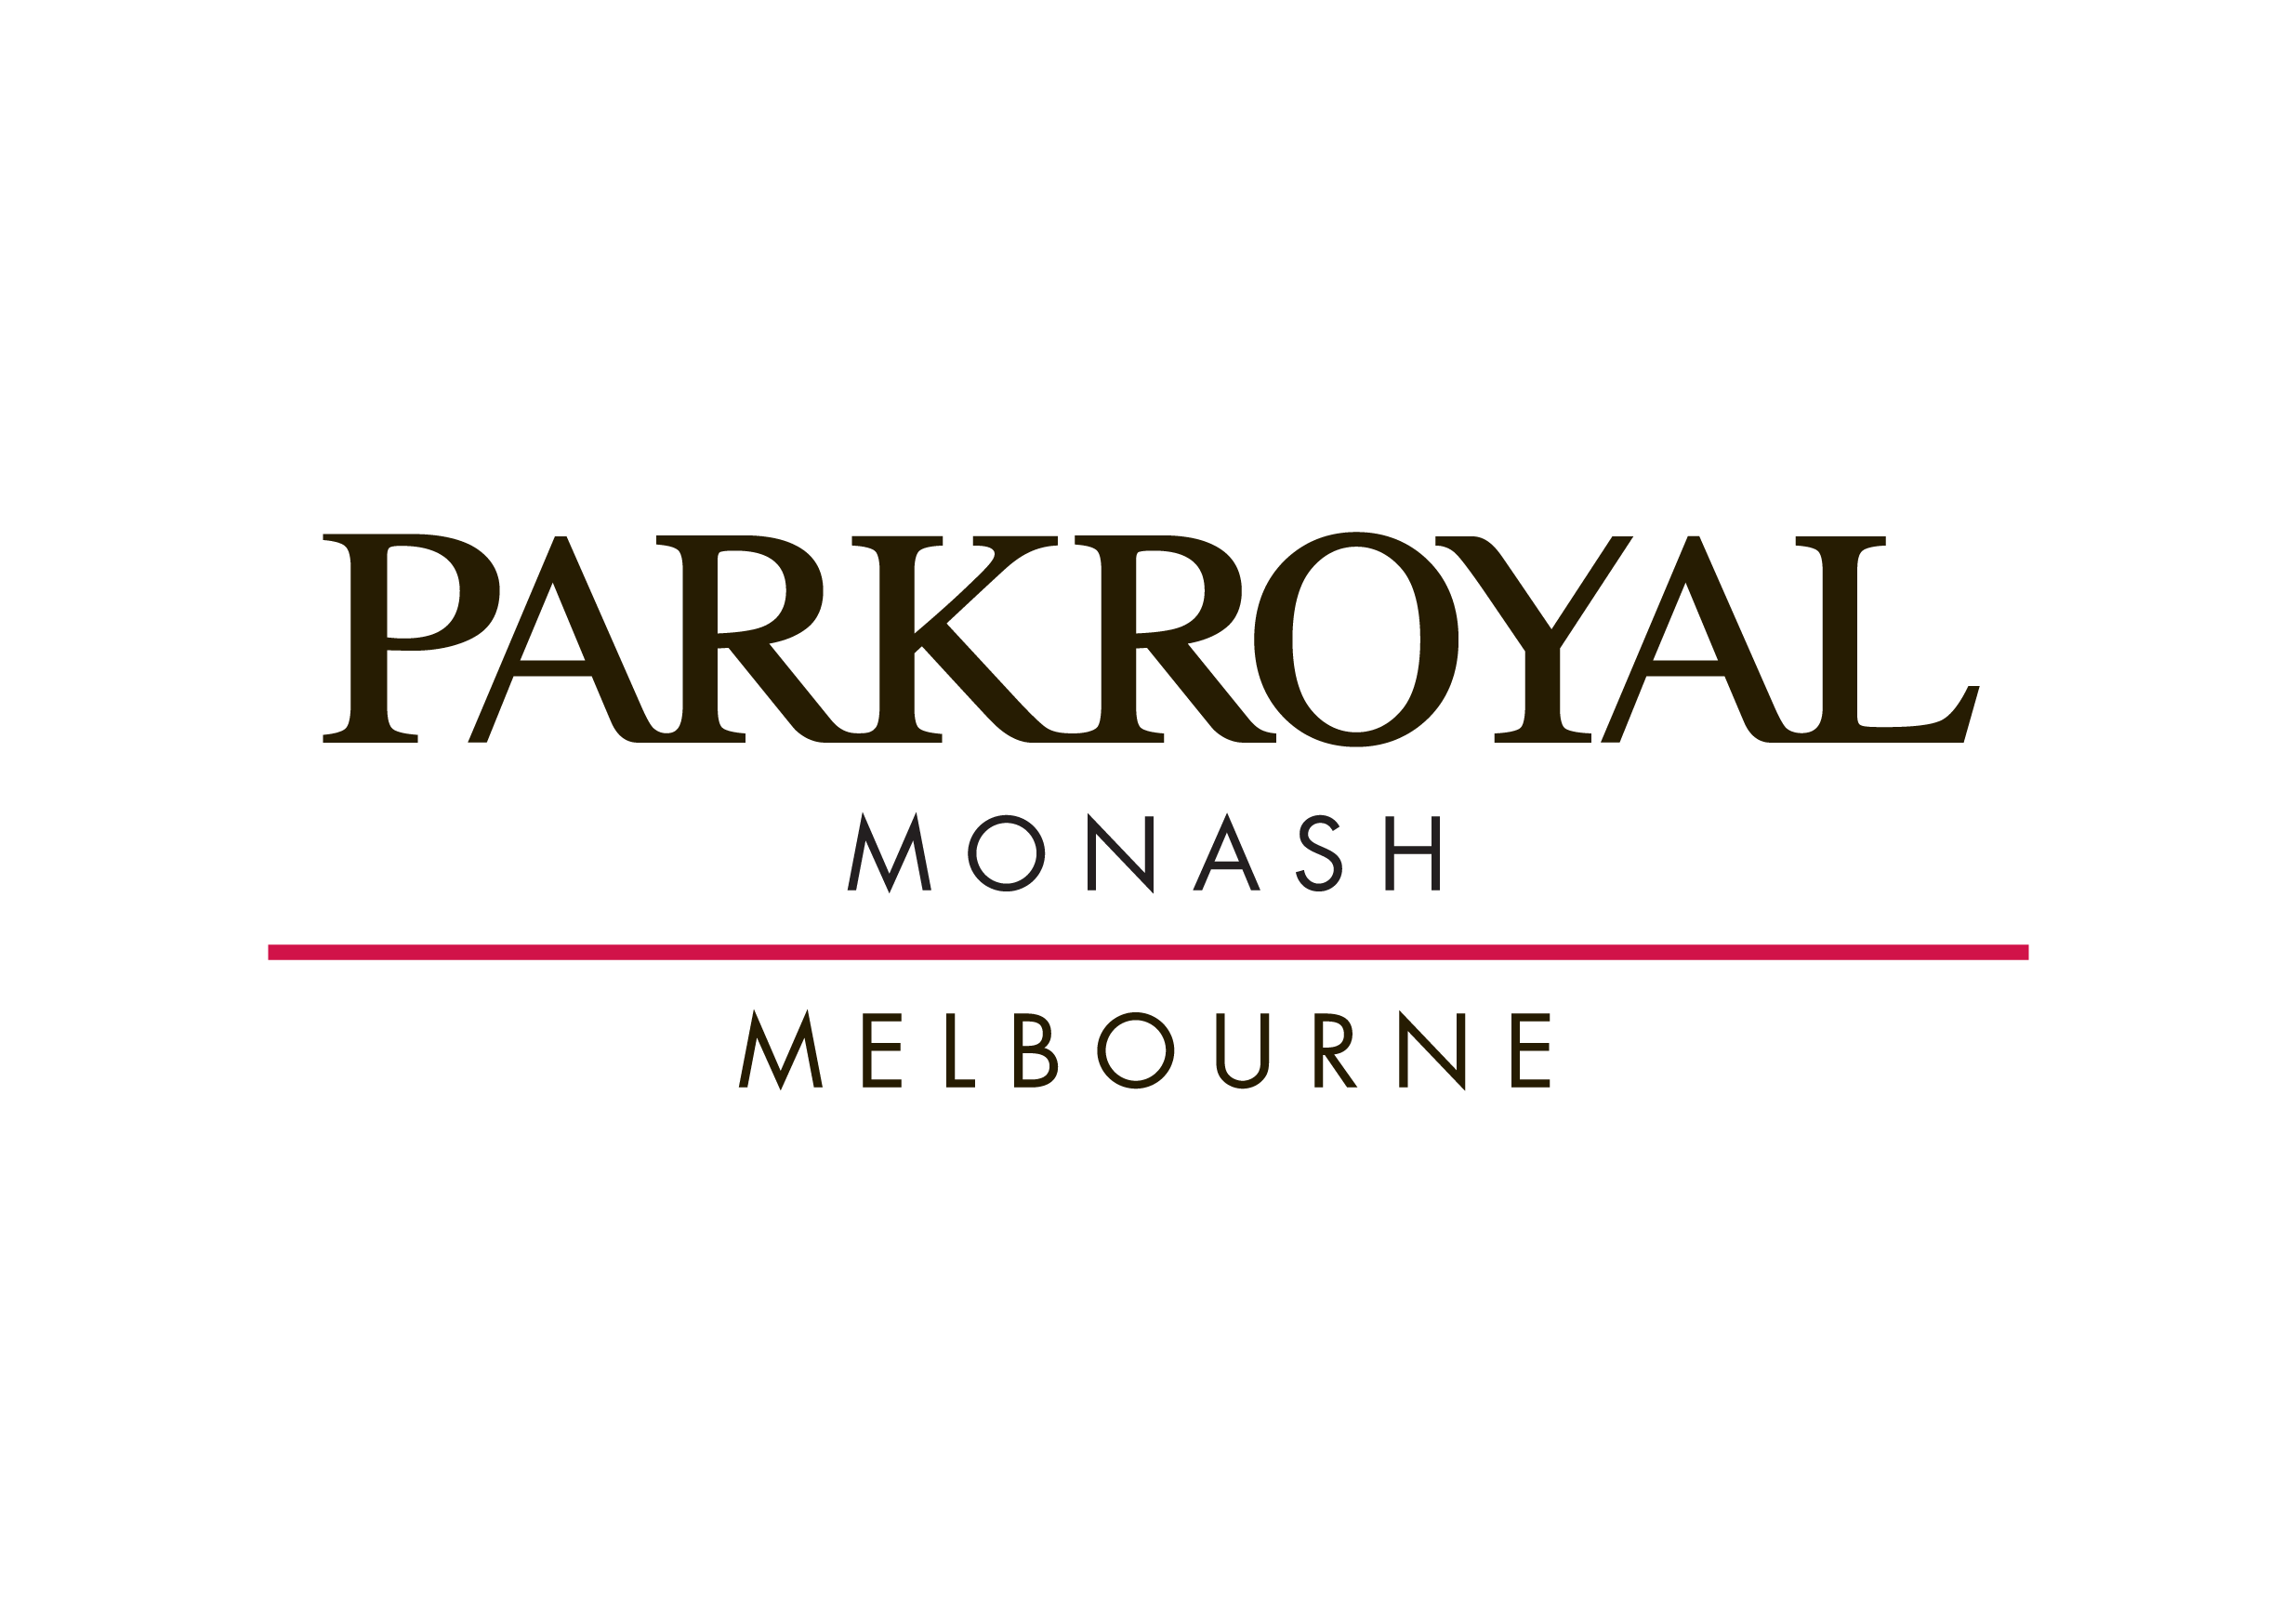 Parkroyal Monash Melbourne